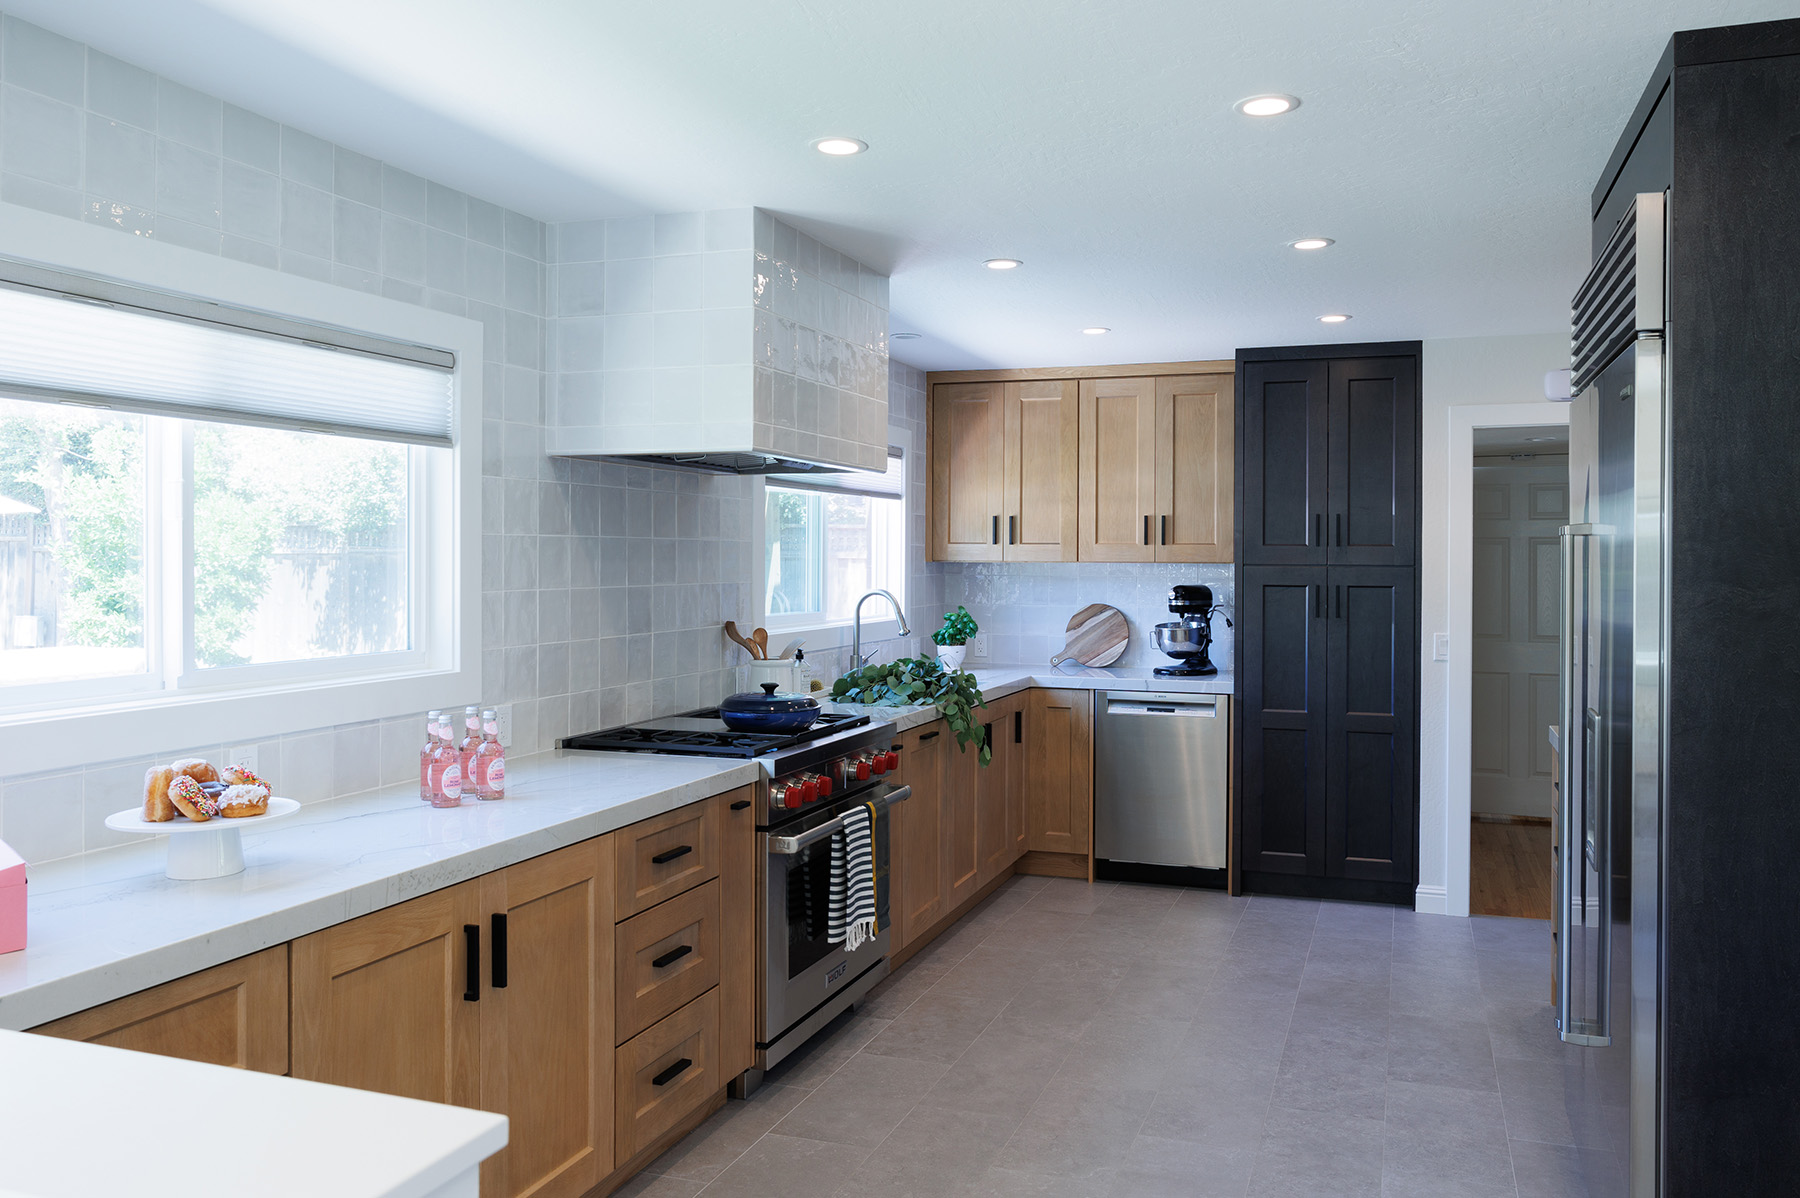 Modern kitchen design in Danville, CA by interior designer Yoko Oda